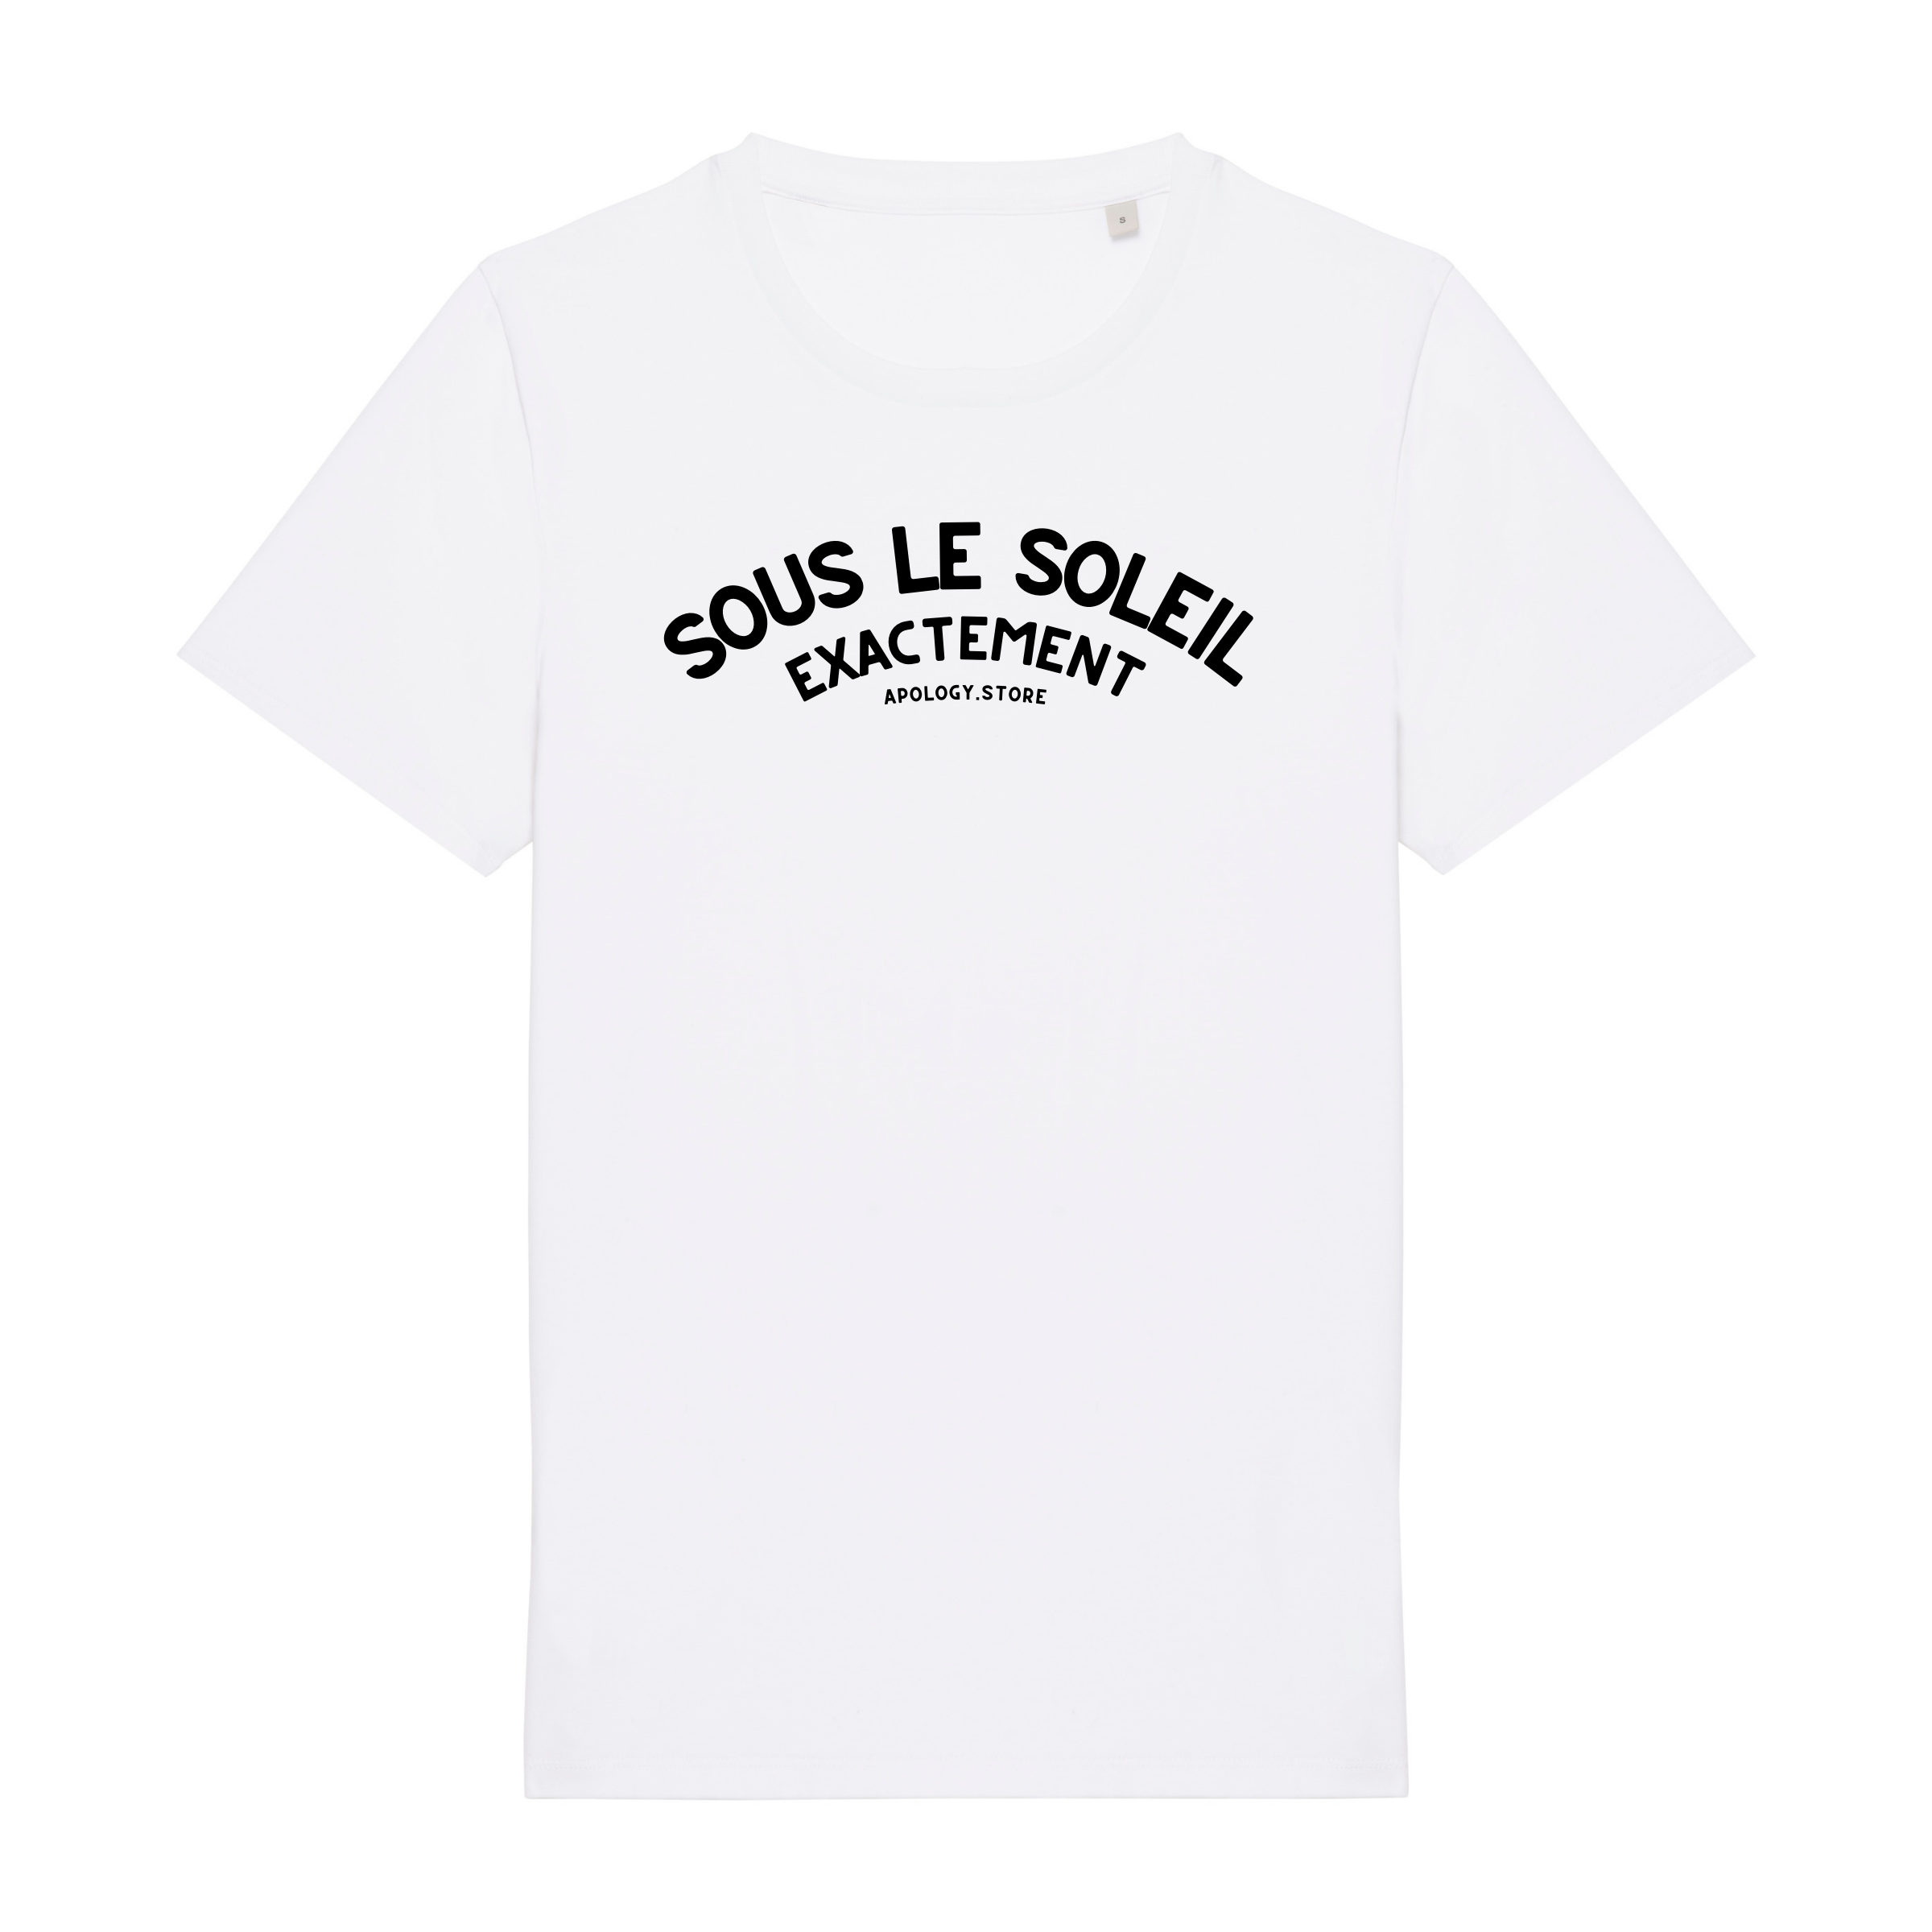 T-shirt Sous le Soleil Exactement - Fabriqué au Portugal XS Blanc - Imprimé en France